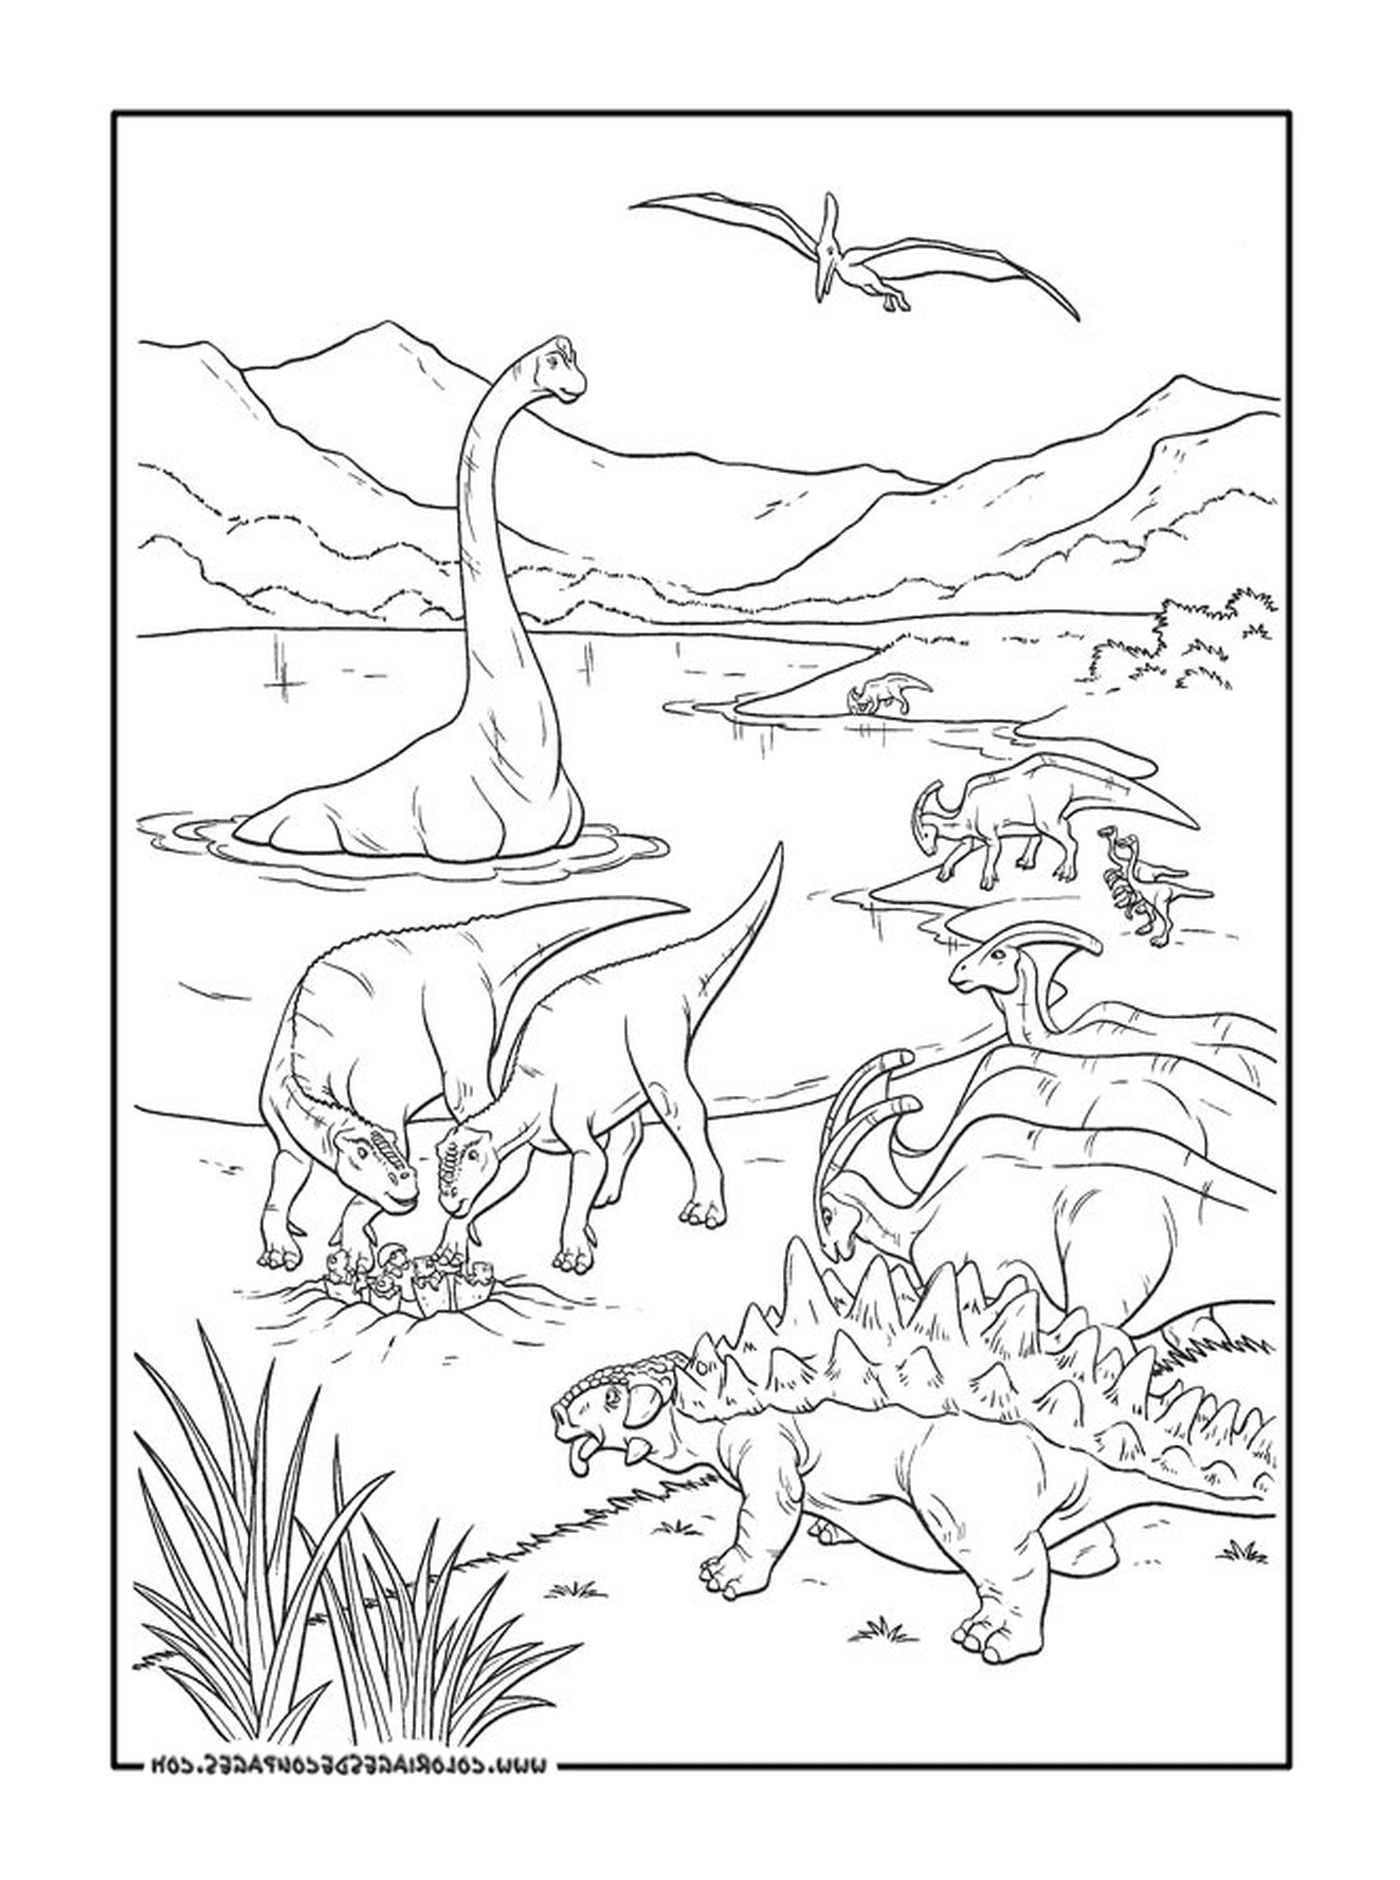  Un adulto di un gruppo di dinosauri 